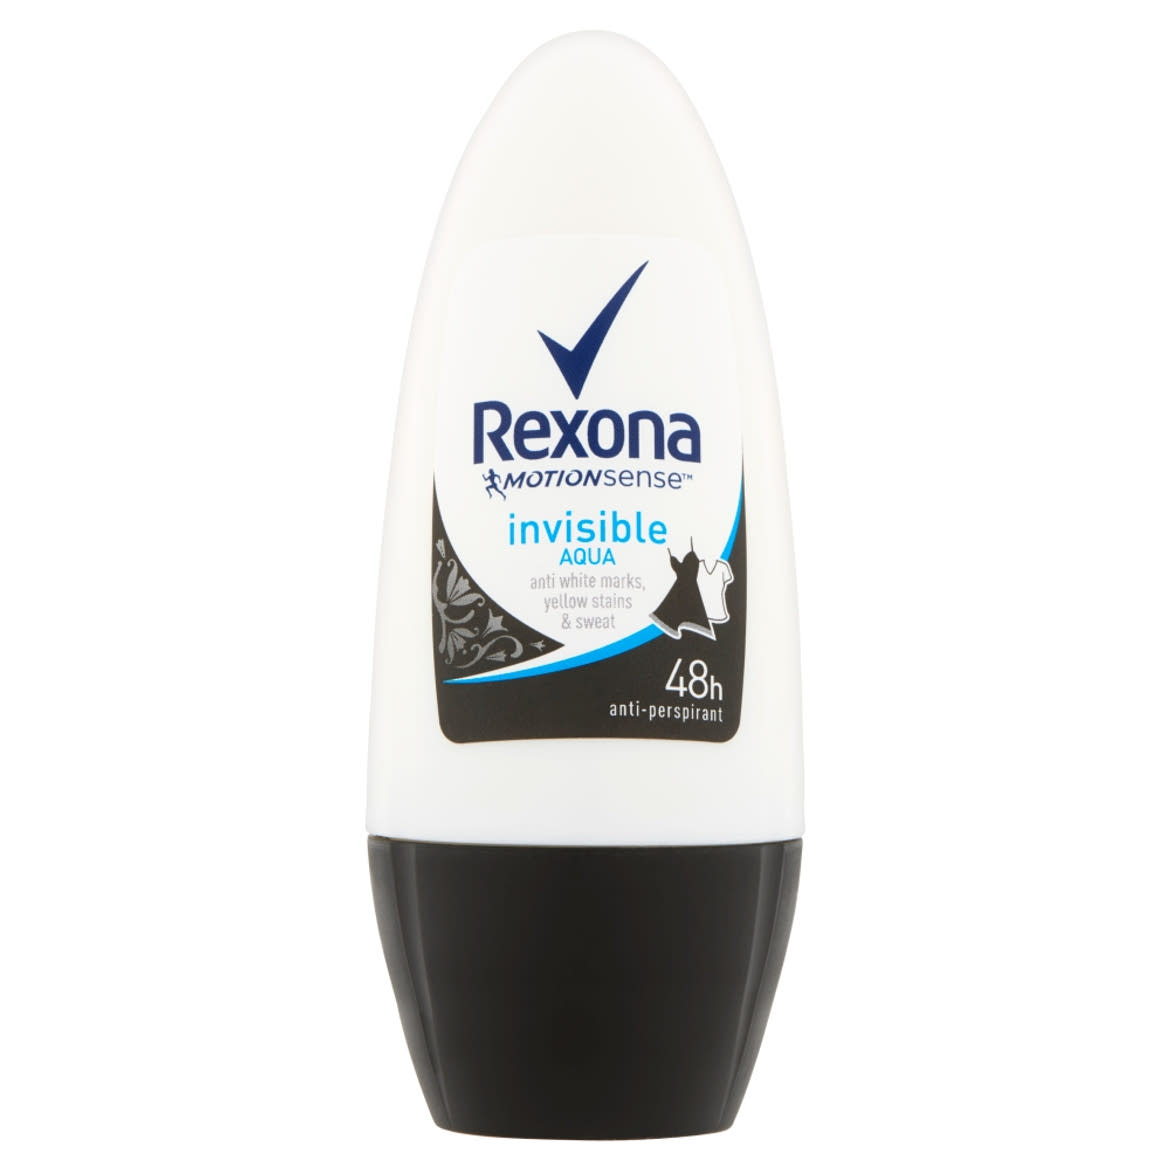 Rexona Invisible Aqua izzadÃ¡sgÃ¡tlÃ³ golyÃ³s dezodor